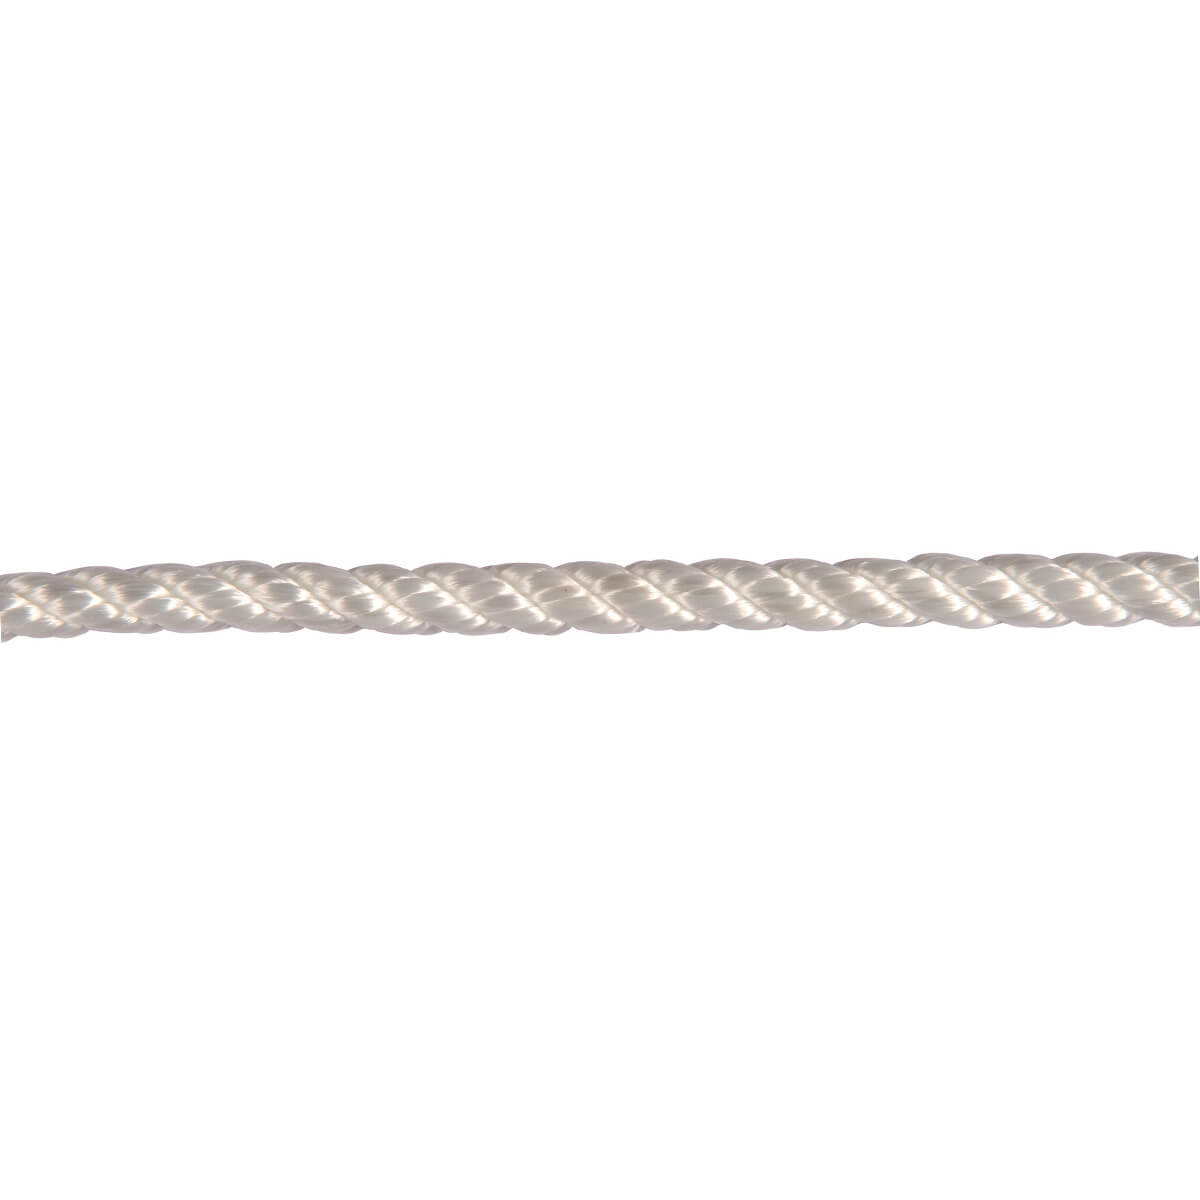 1/4"x50' Twisted Nylon Rope, White